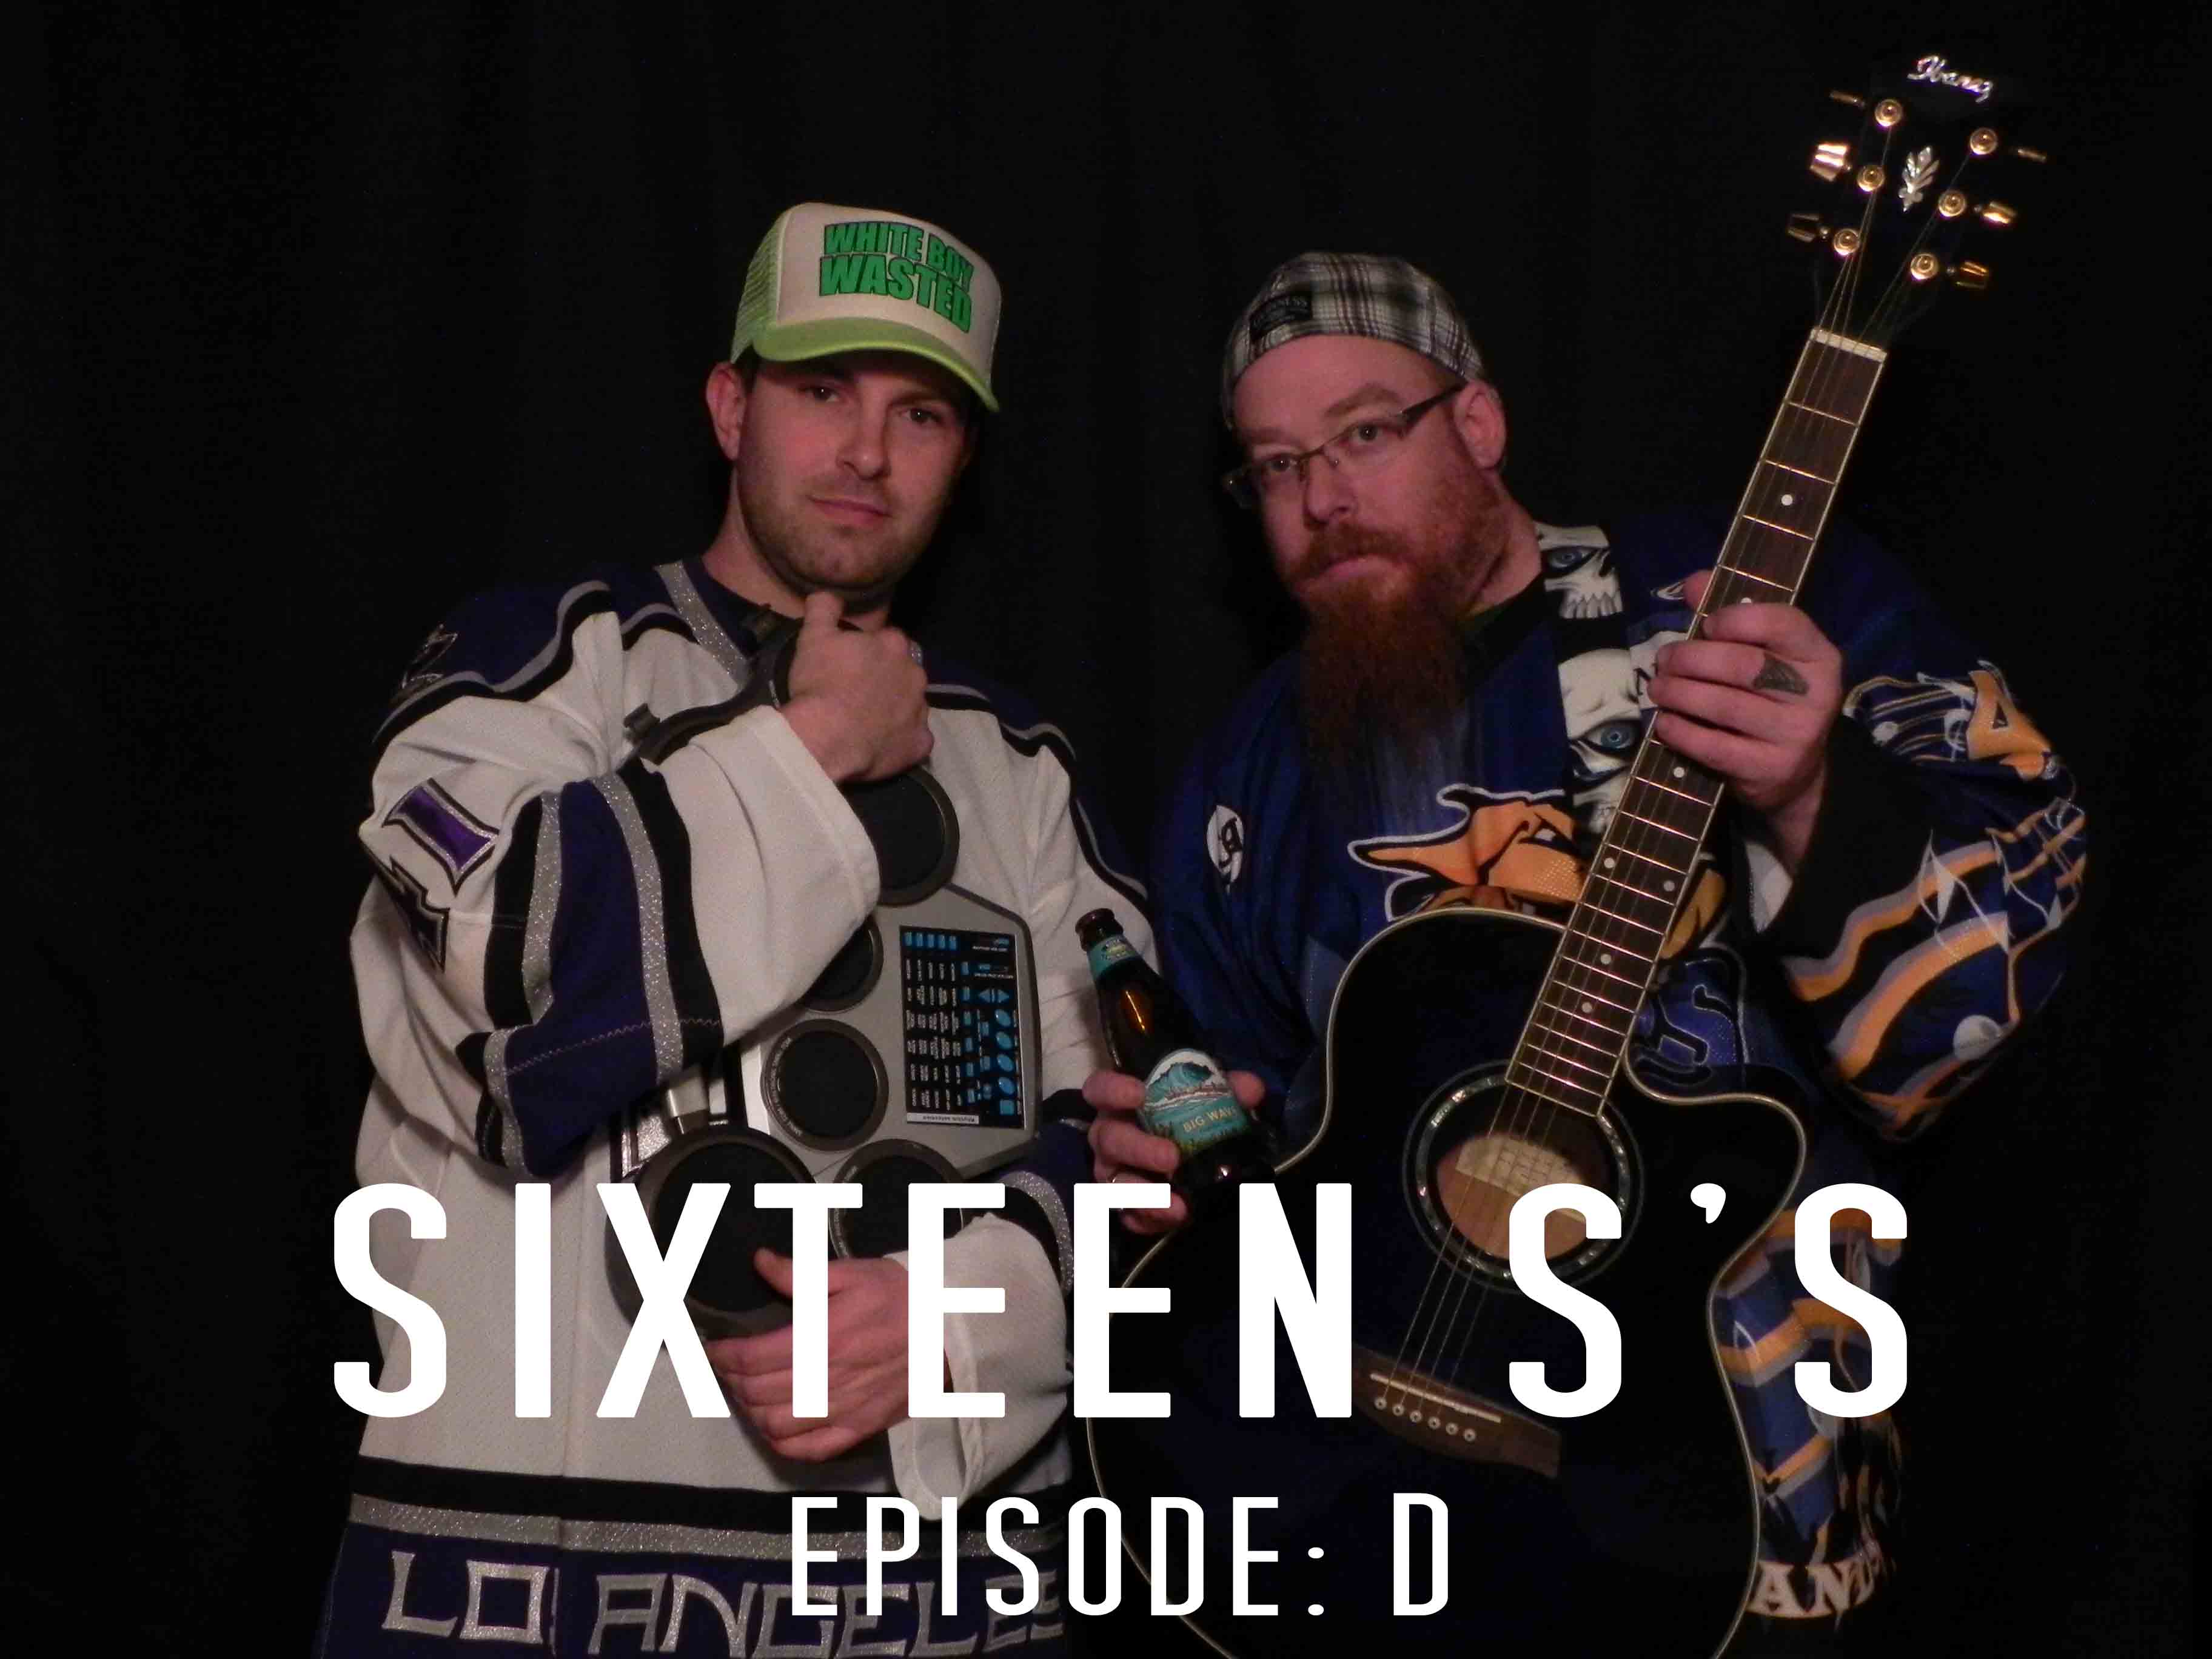 Sixteen S’s (Episode D)